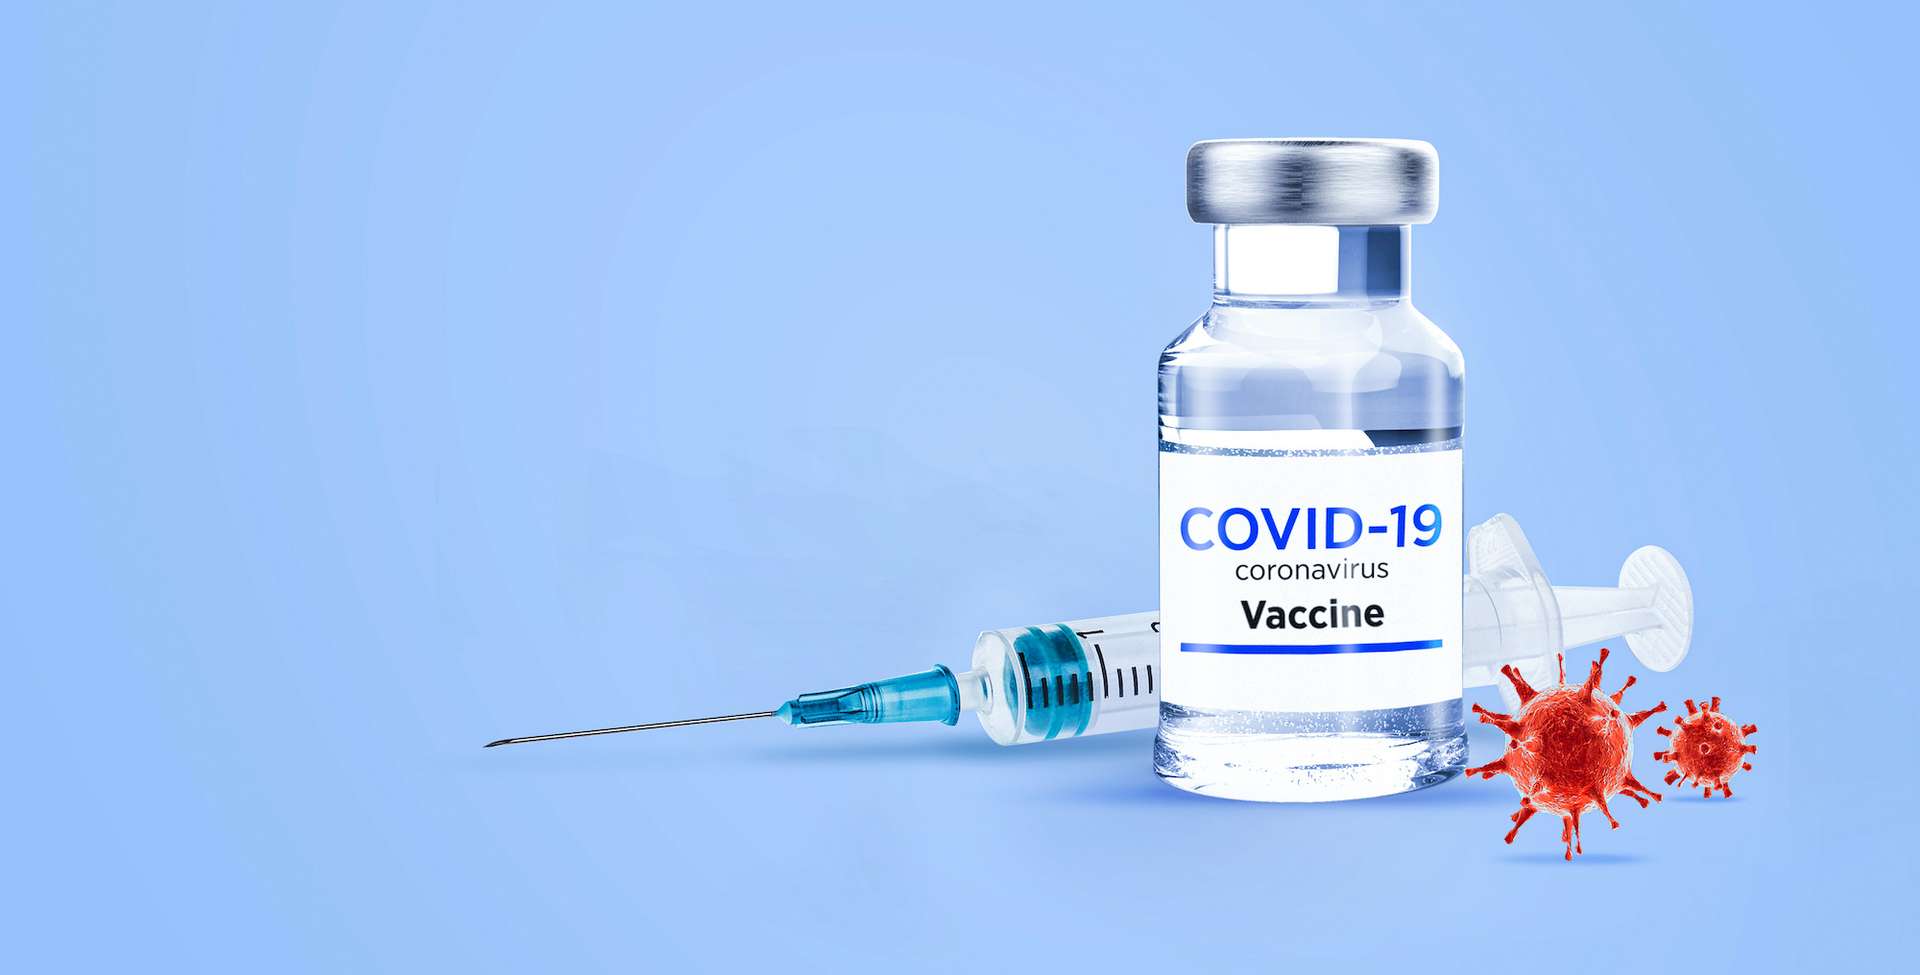 c34a1e7ce2_50167015_vaccin-coronavirus-ahmet-aglamaz-adobe-stock